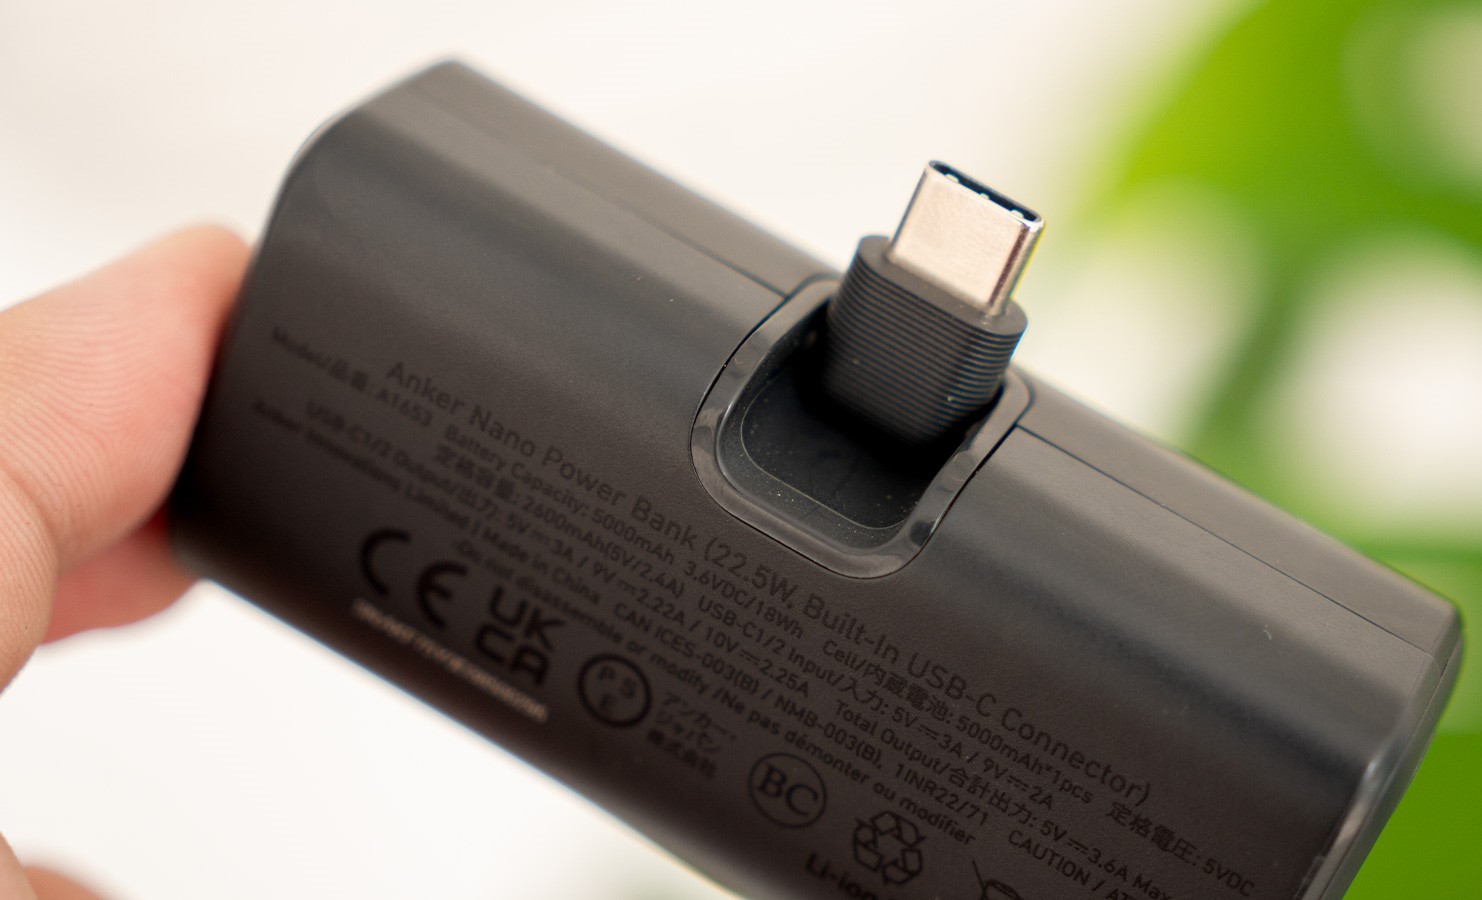 Cổng USB-C có thể gập lại, tránh bị gãy khi để ở nơi chật hẹp (Ảnh: Internet)